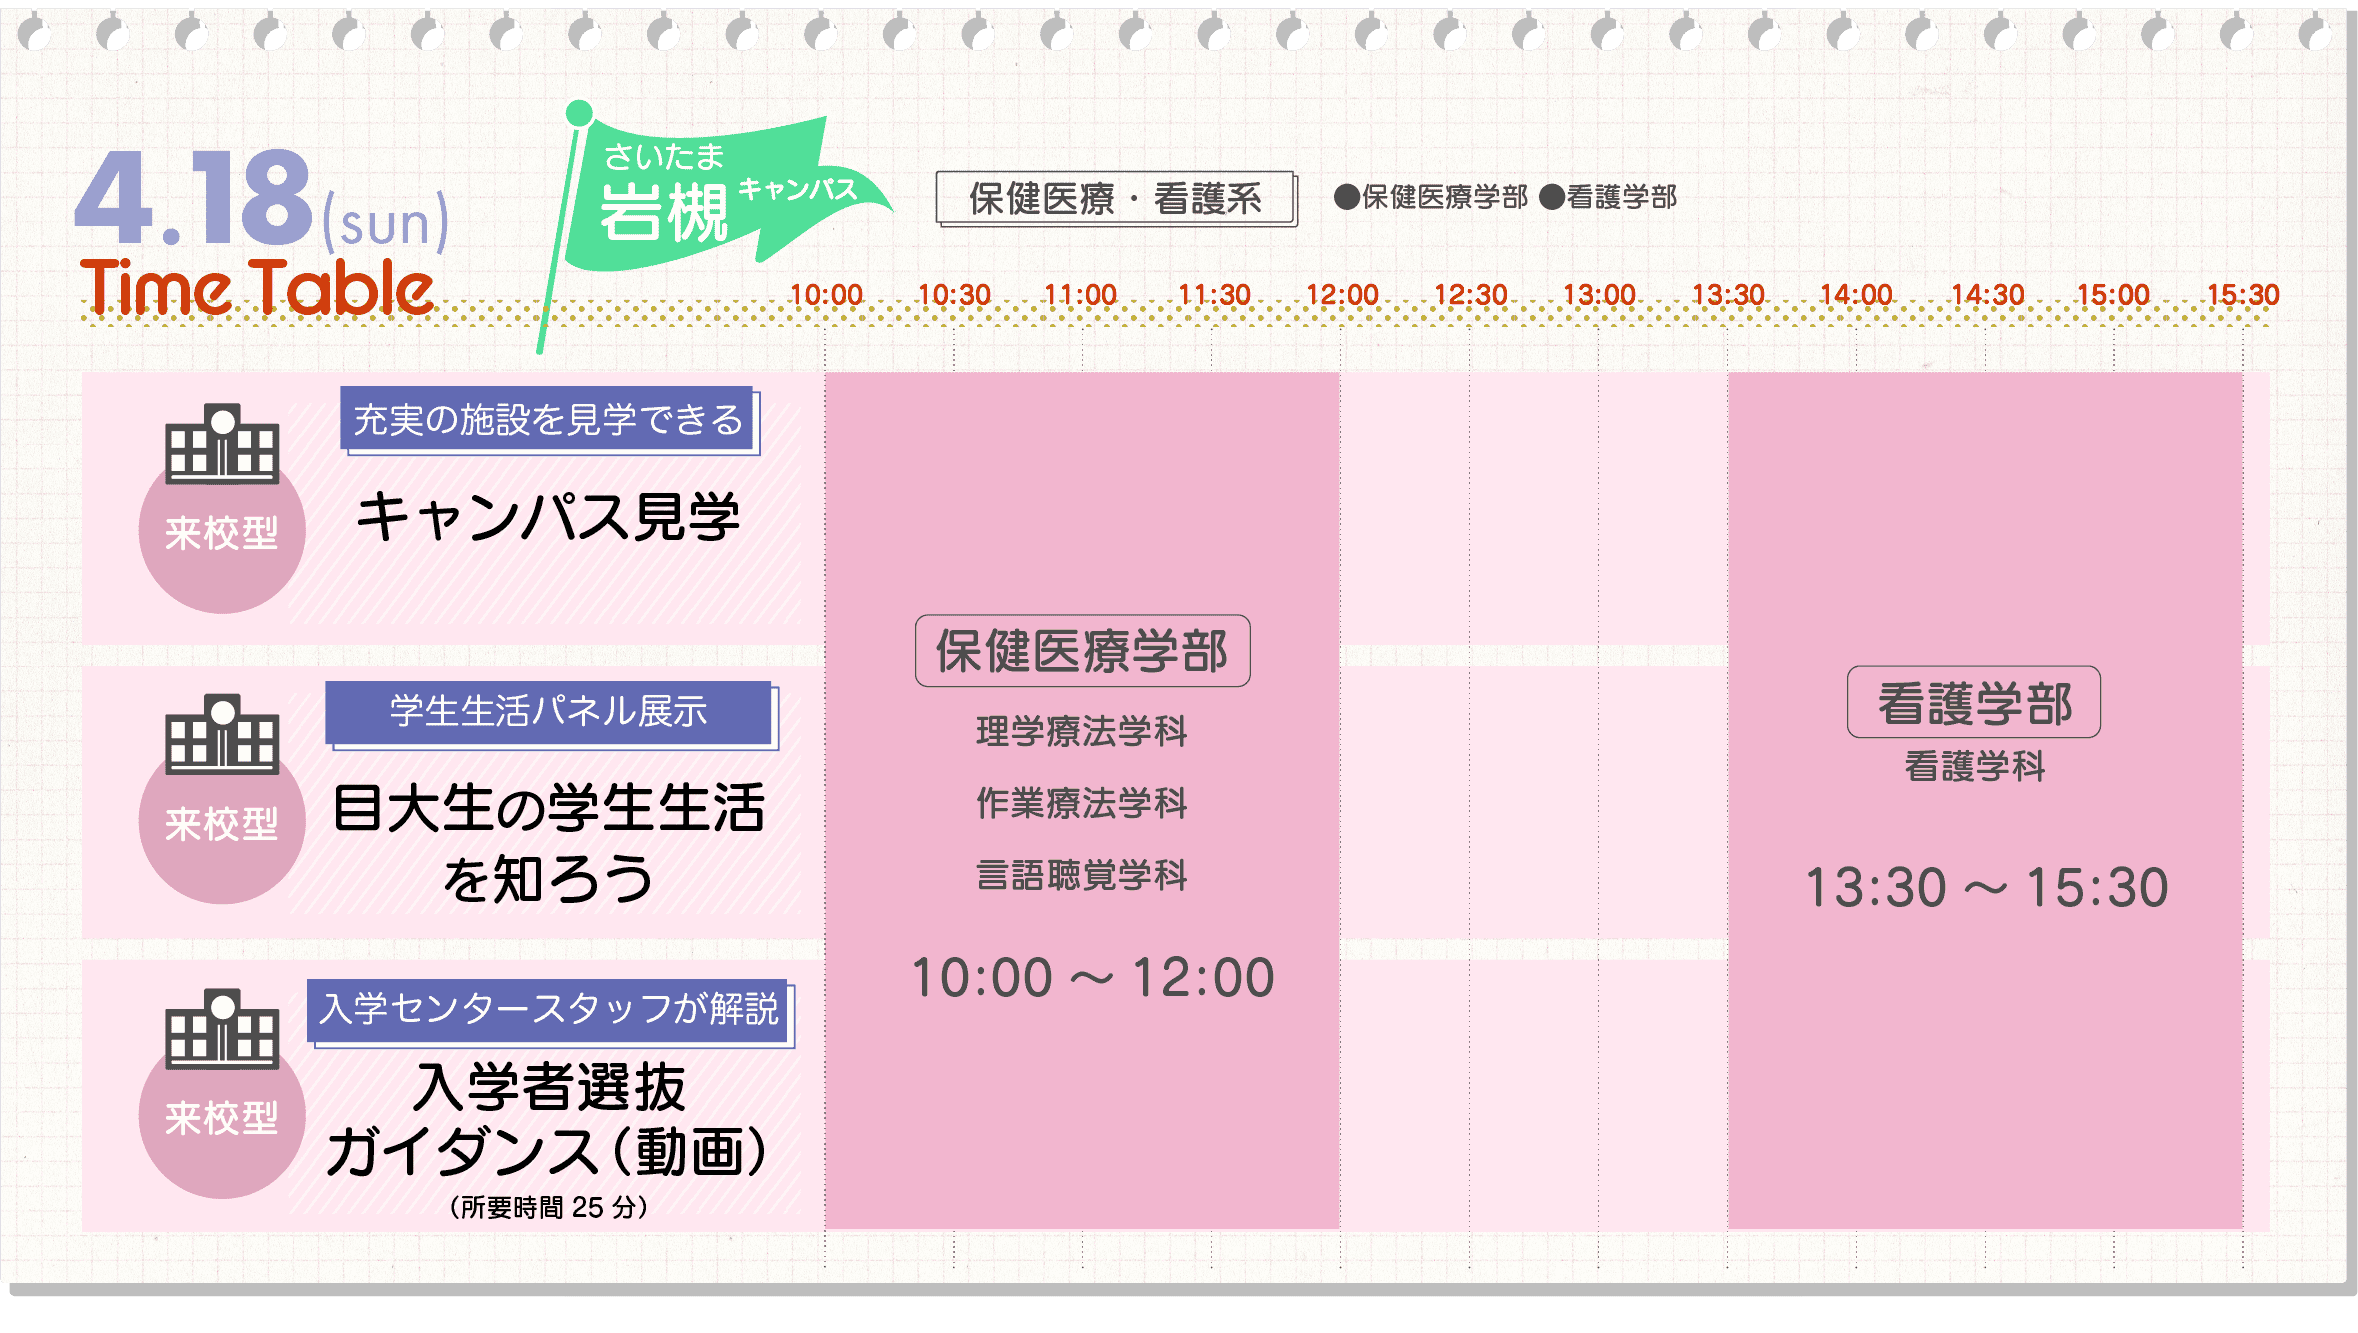 さいたま岩槻キャンパス4/18タイムテーブル